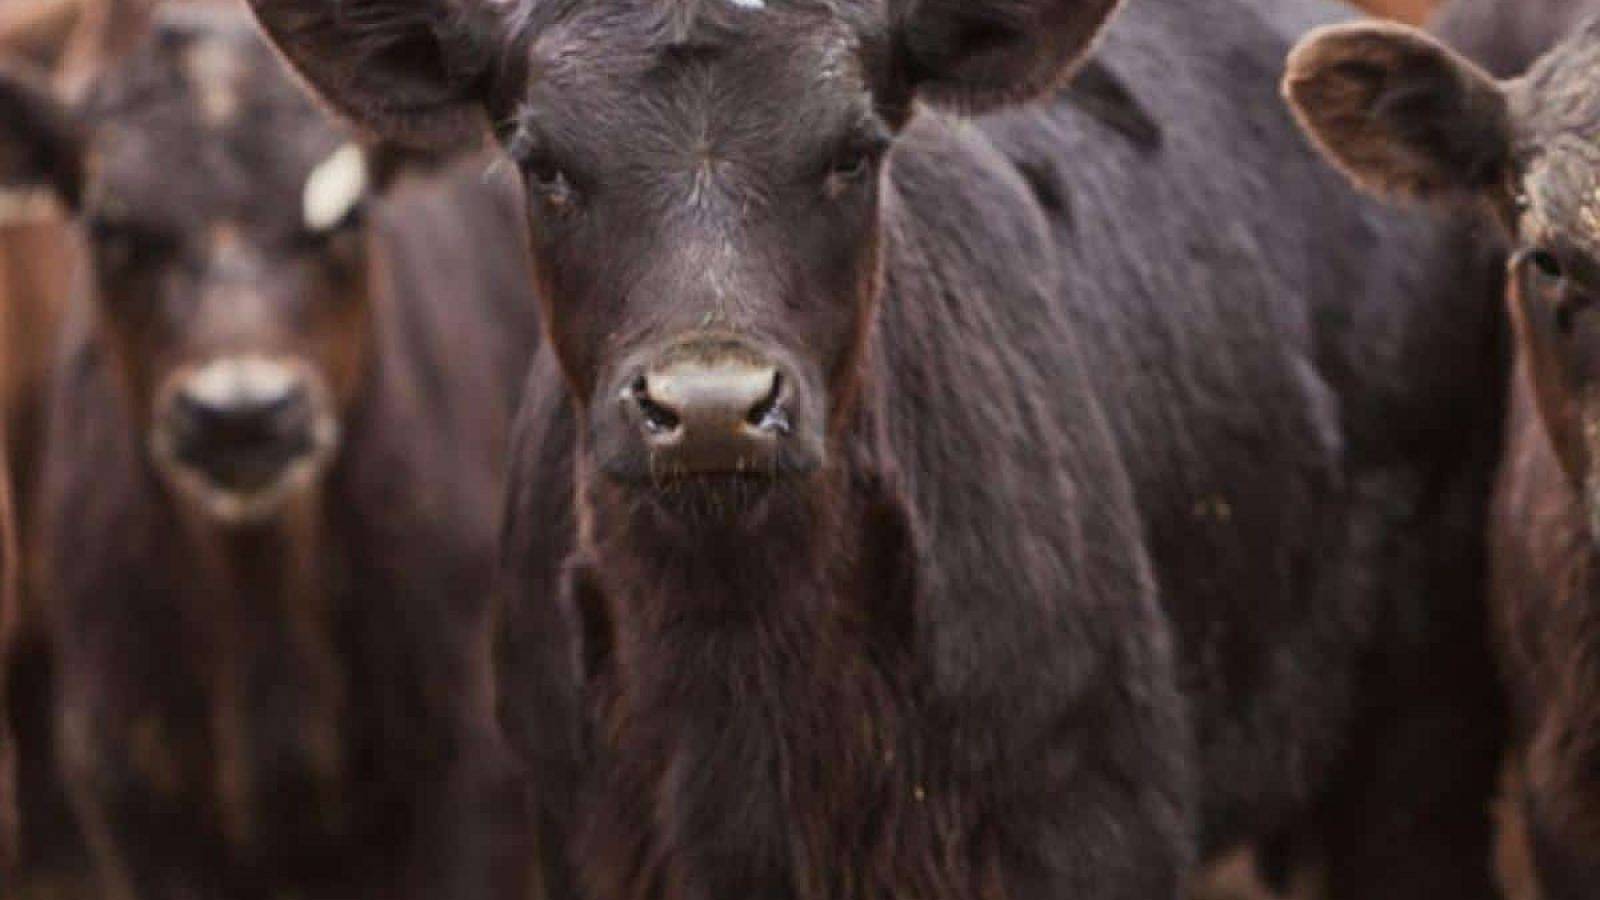 cattle calves weaned insurance